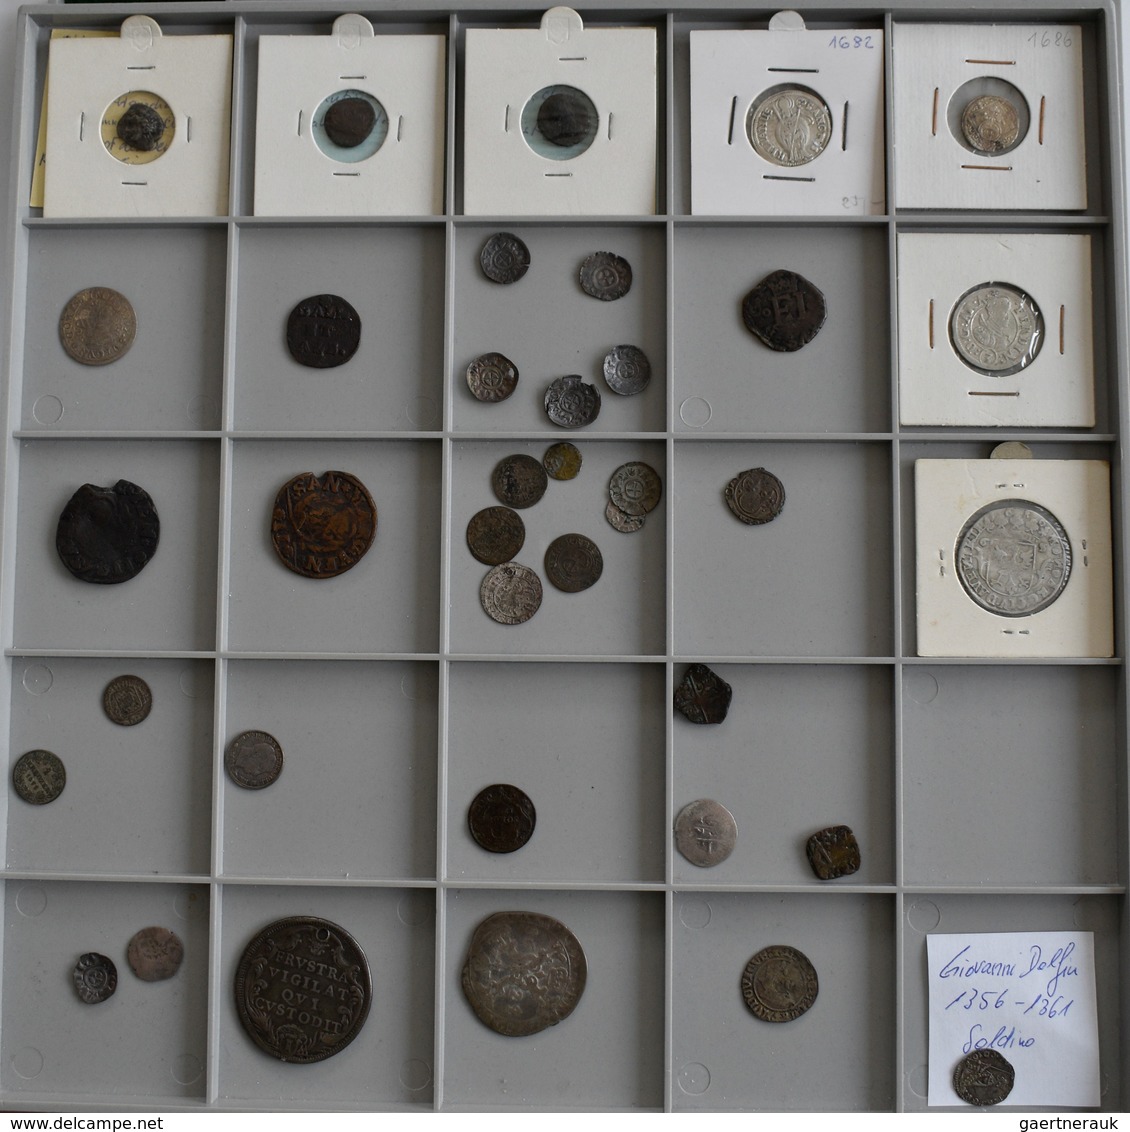 Europa: Konvolut Von Ca. 210 Silber- Und Bronzemünzen Diverser Europäischer Staaten, Beginnend Ab De - Sonstige – Europa